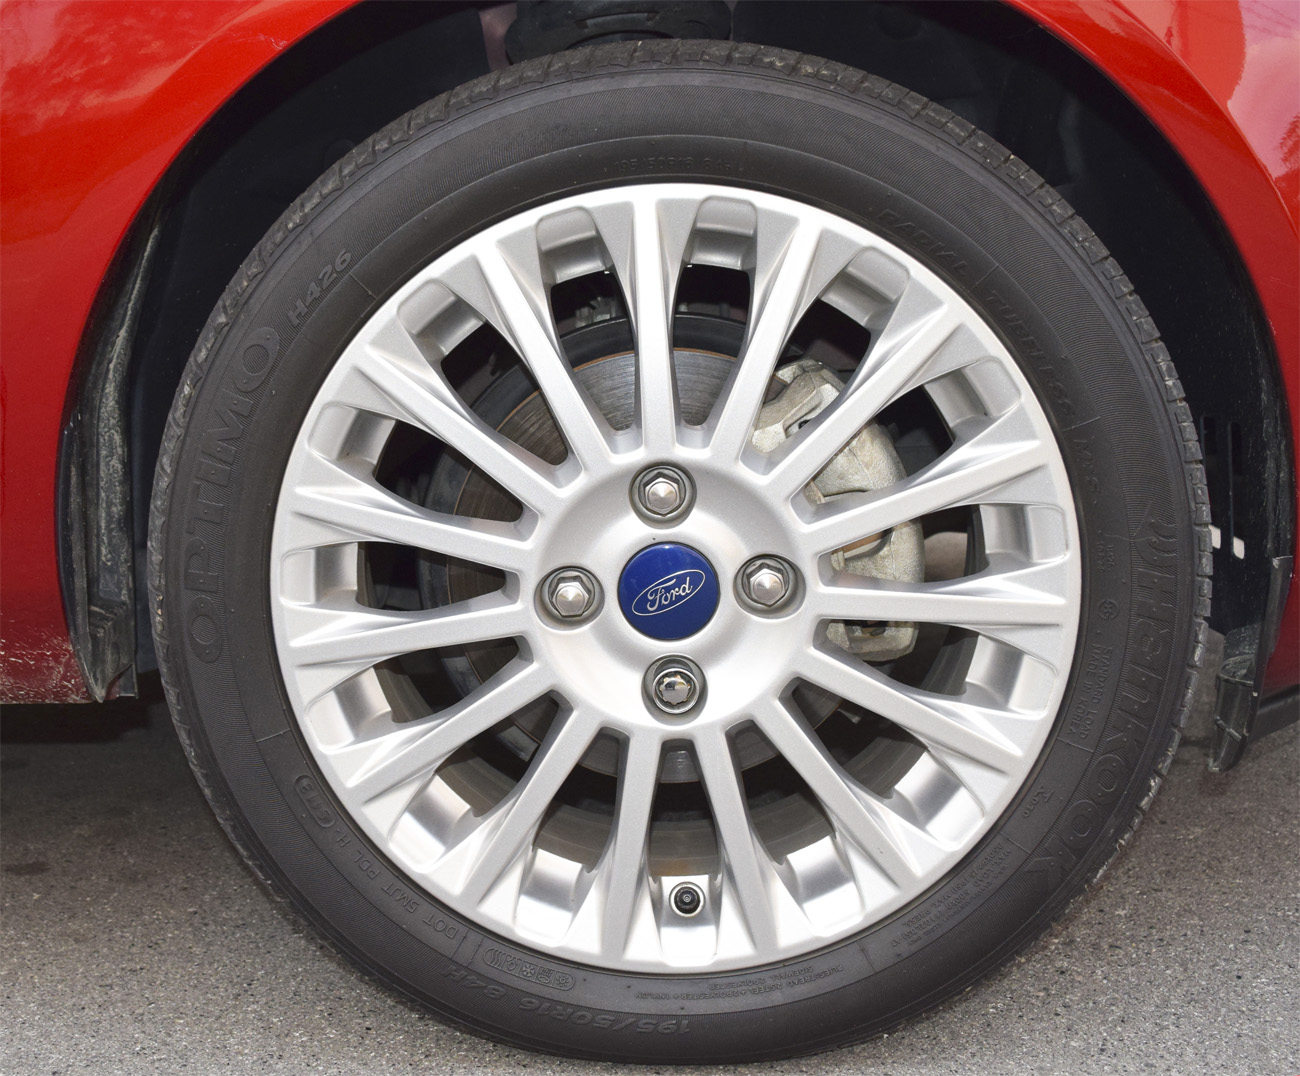 Ventilación Deshacer Rizo Ford Fiesta Titanium - Parte 2 - Conducción, consumo, seguridad y la  solución al problema de cajas automáticas